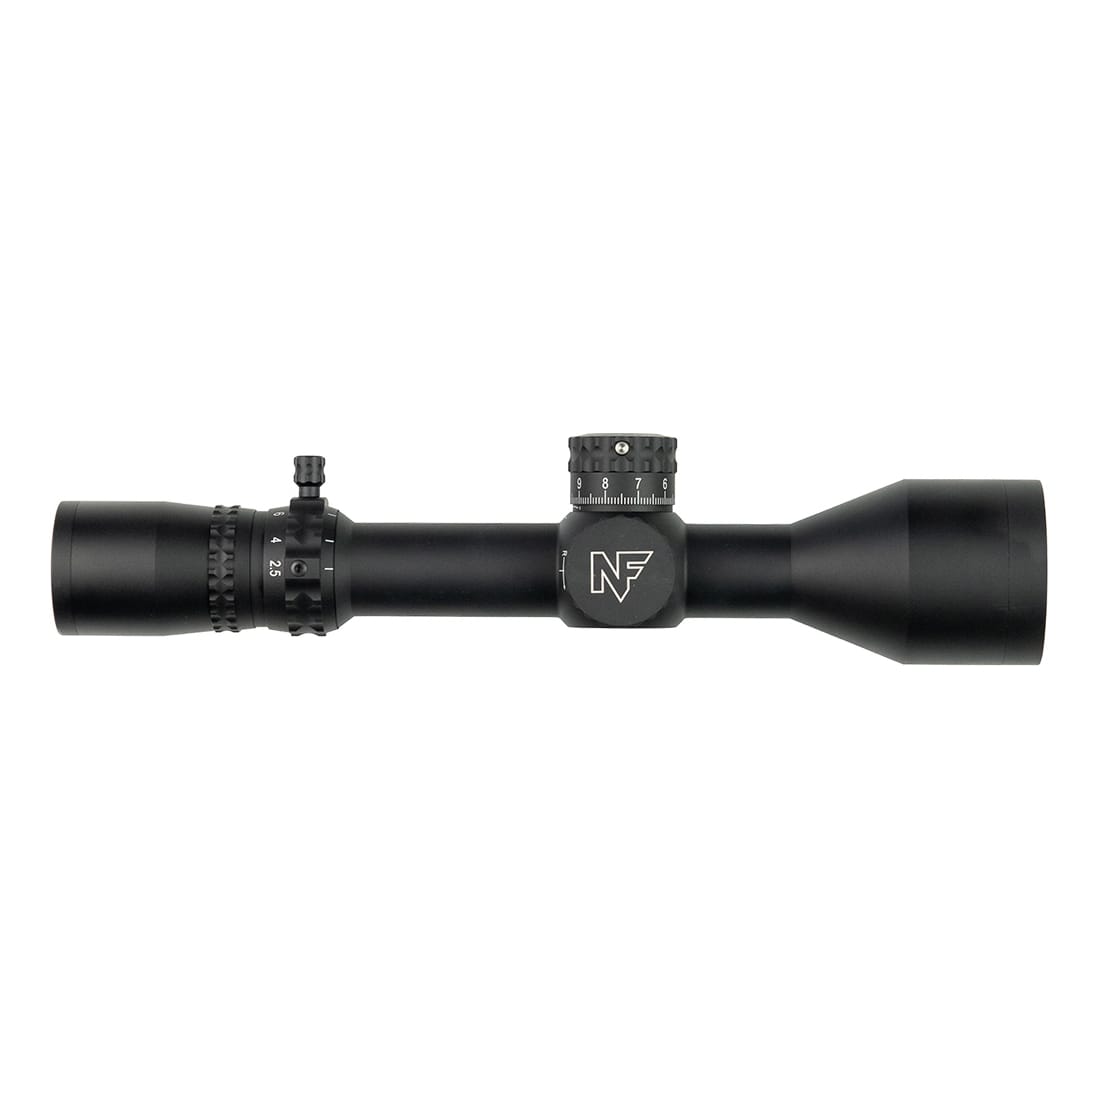 Nightforce® NX8 Riflescope - 2.5-20x50mm - MIL-C F1